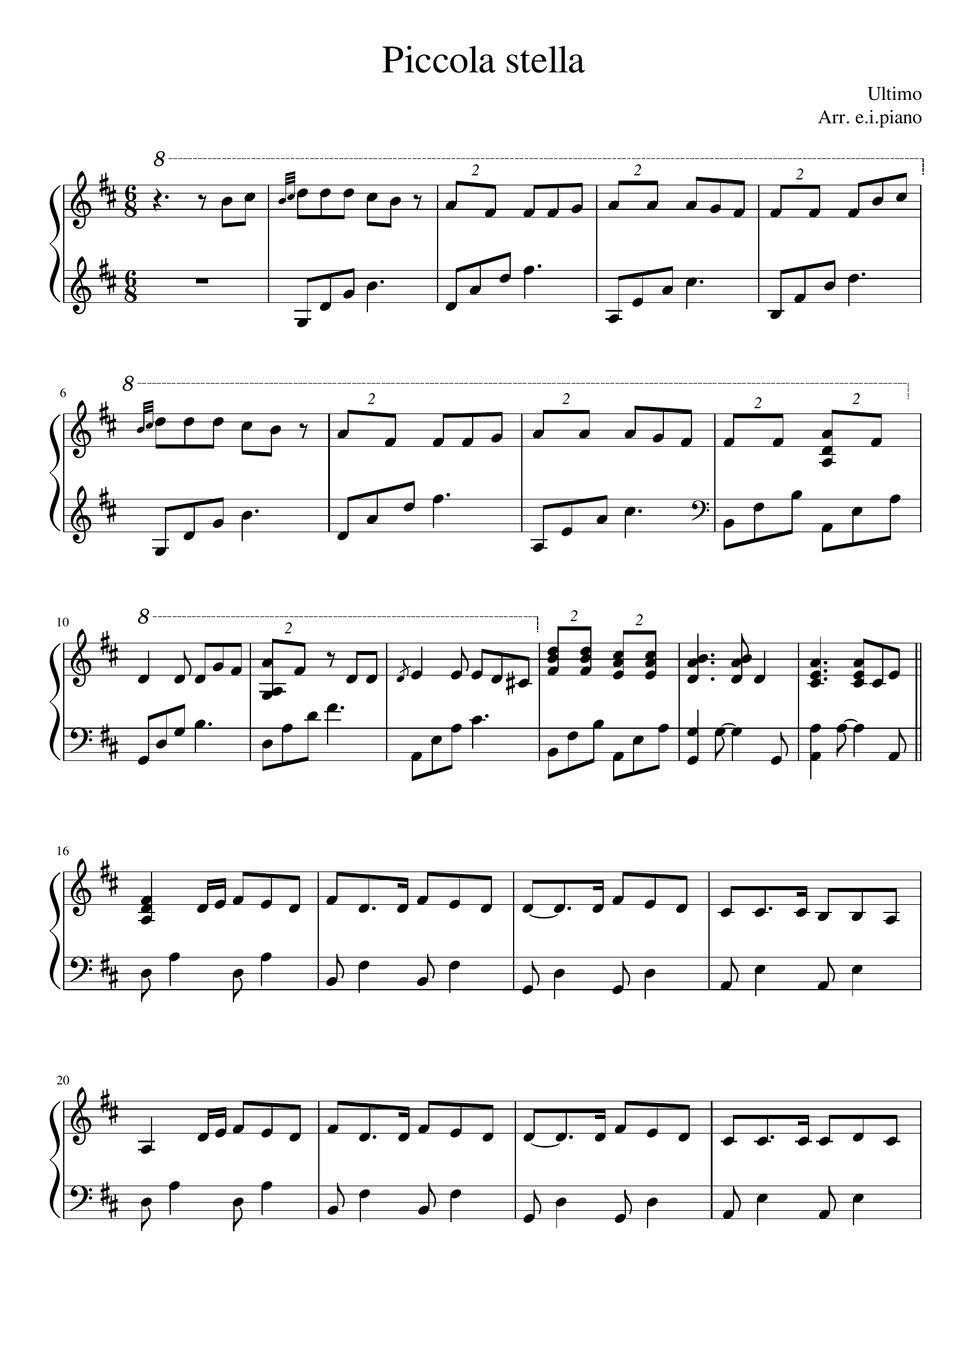 Ultimo - Piccola stella sheet music for piano [PDF], Piano&Vocal